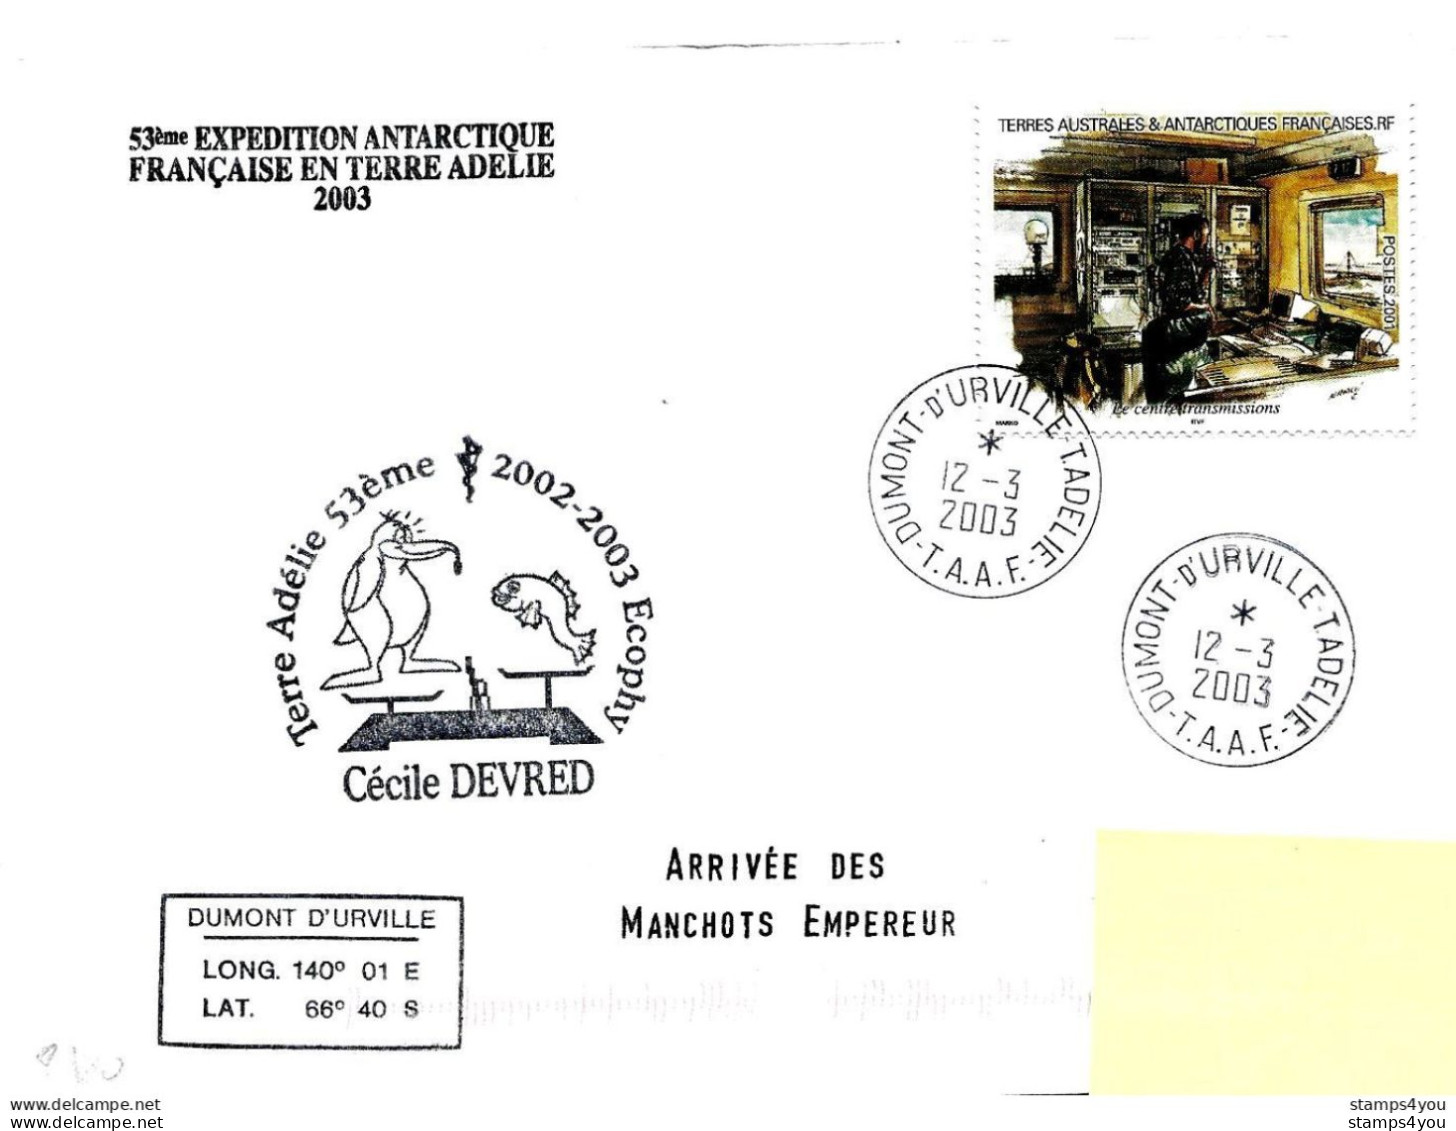 229 - 16 - Enveloppe TAAF Terre Adélie "arrivée Manchots 2003" - Timbre Tiré Carnet De Voyage - Basi Scientifiche